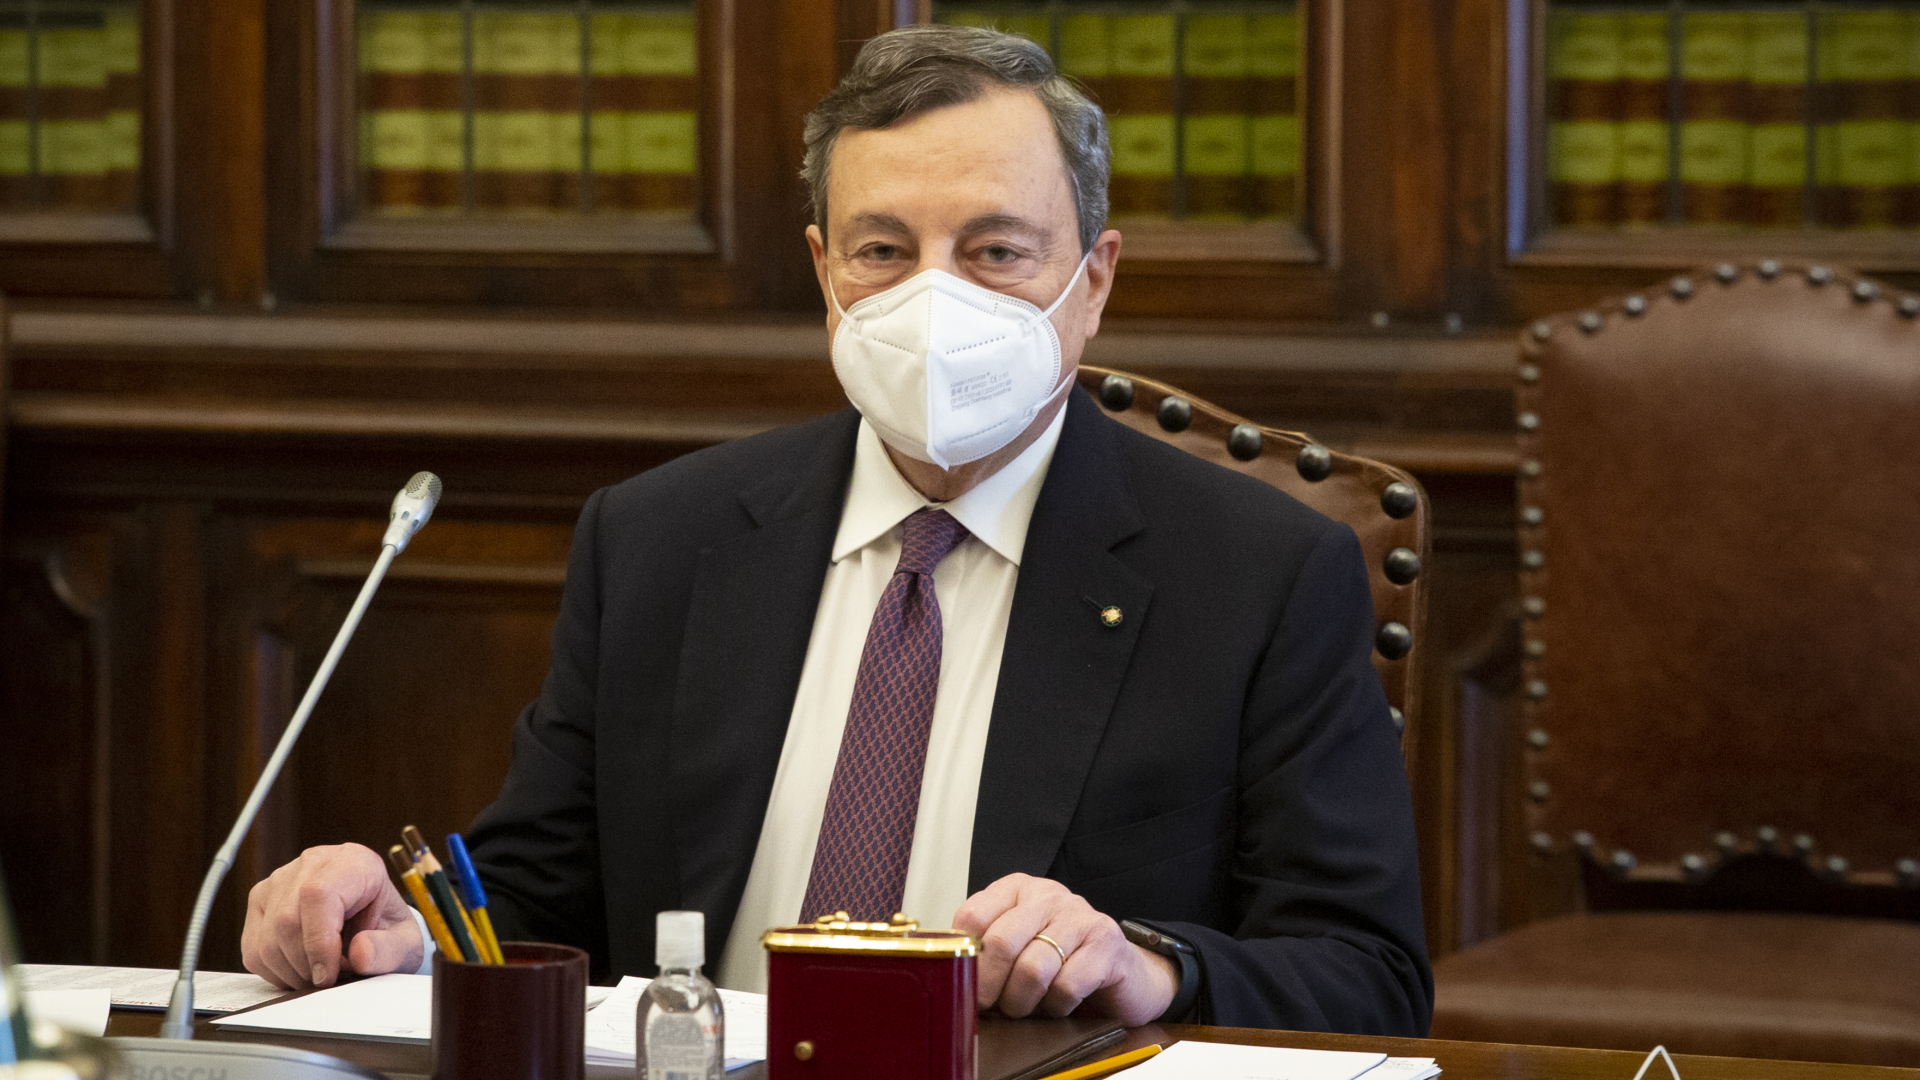 Mario Draghi trägt einen Mund-Nasen-Schutz während der Beratungen zur Bildung der neuen italienischen Regierung. | dpa